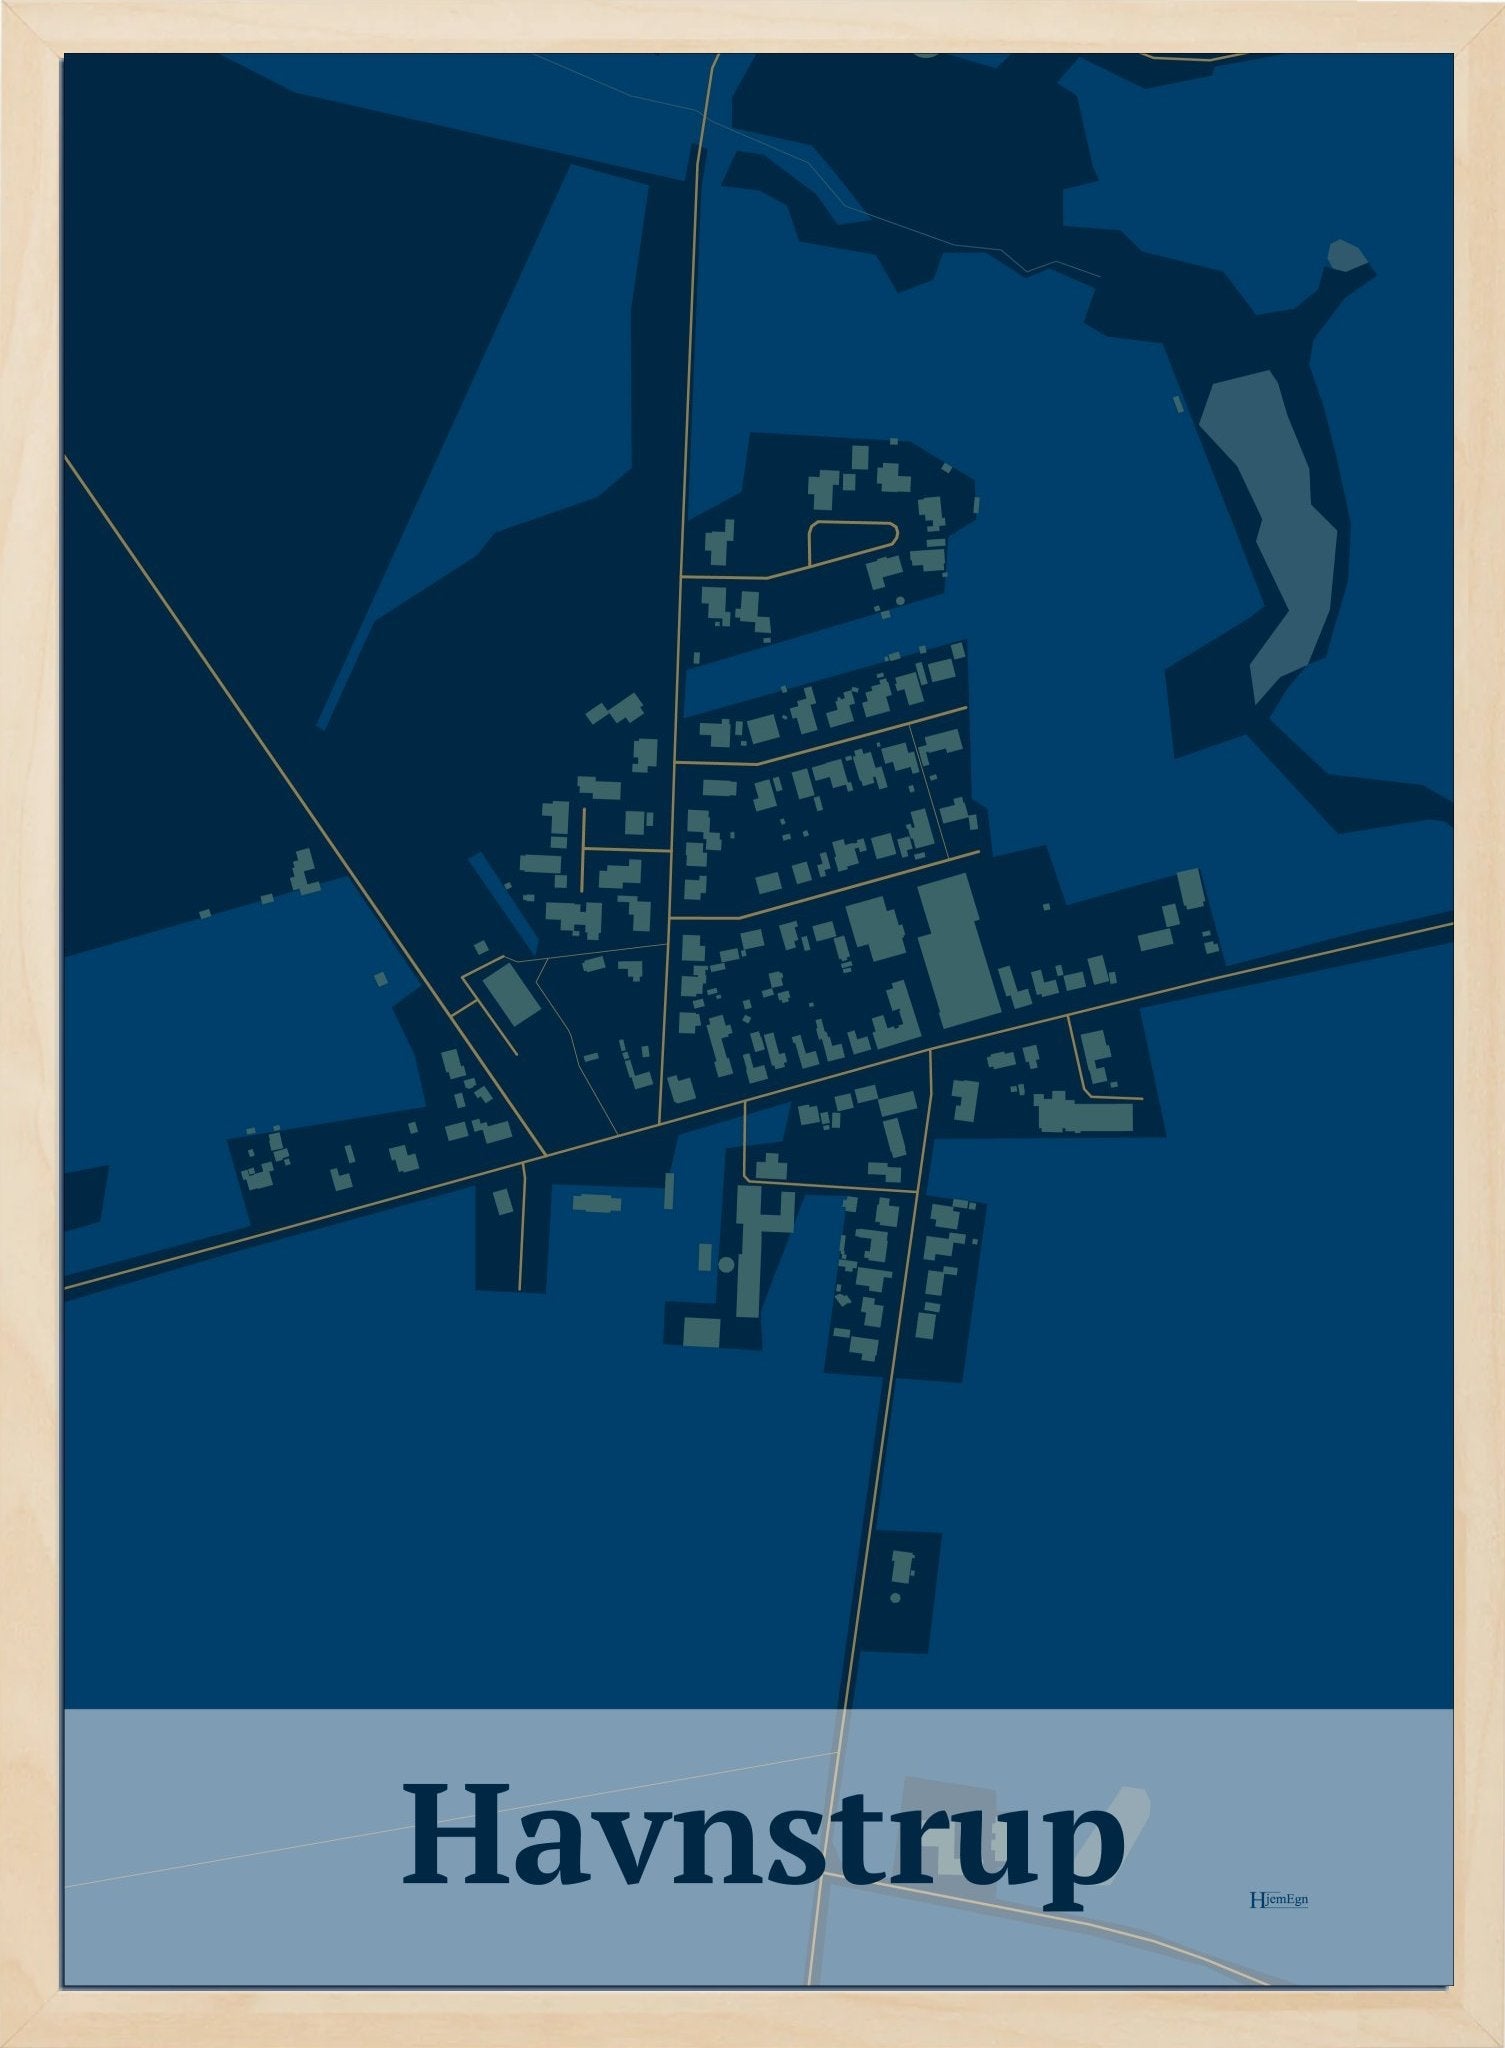 Havnstrup plakat i farve mørk blå og HjemEgn.dk design firkantet. Design bykort for Havnstrup